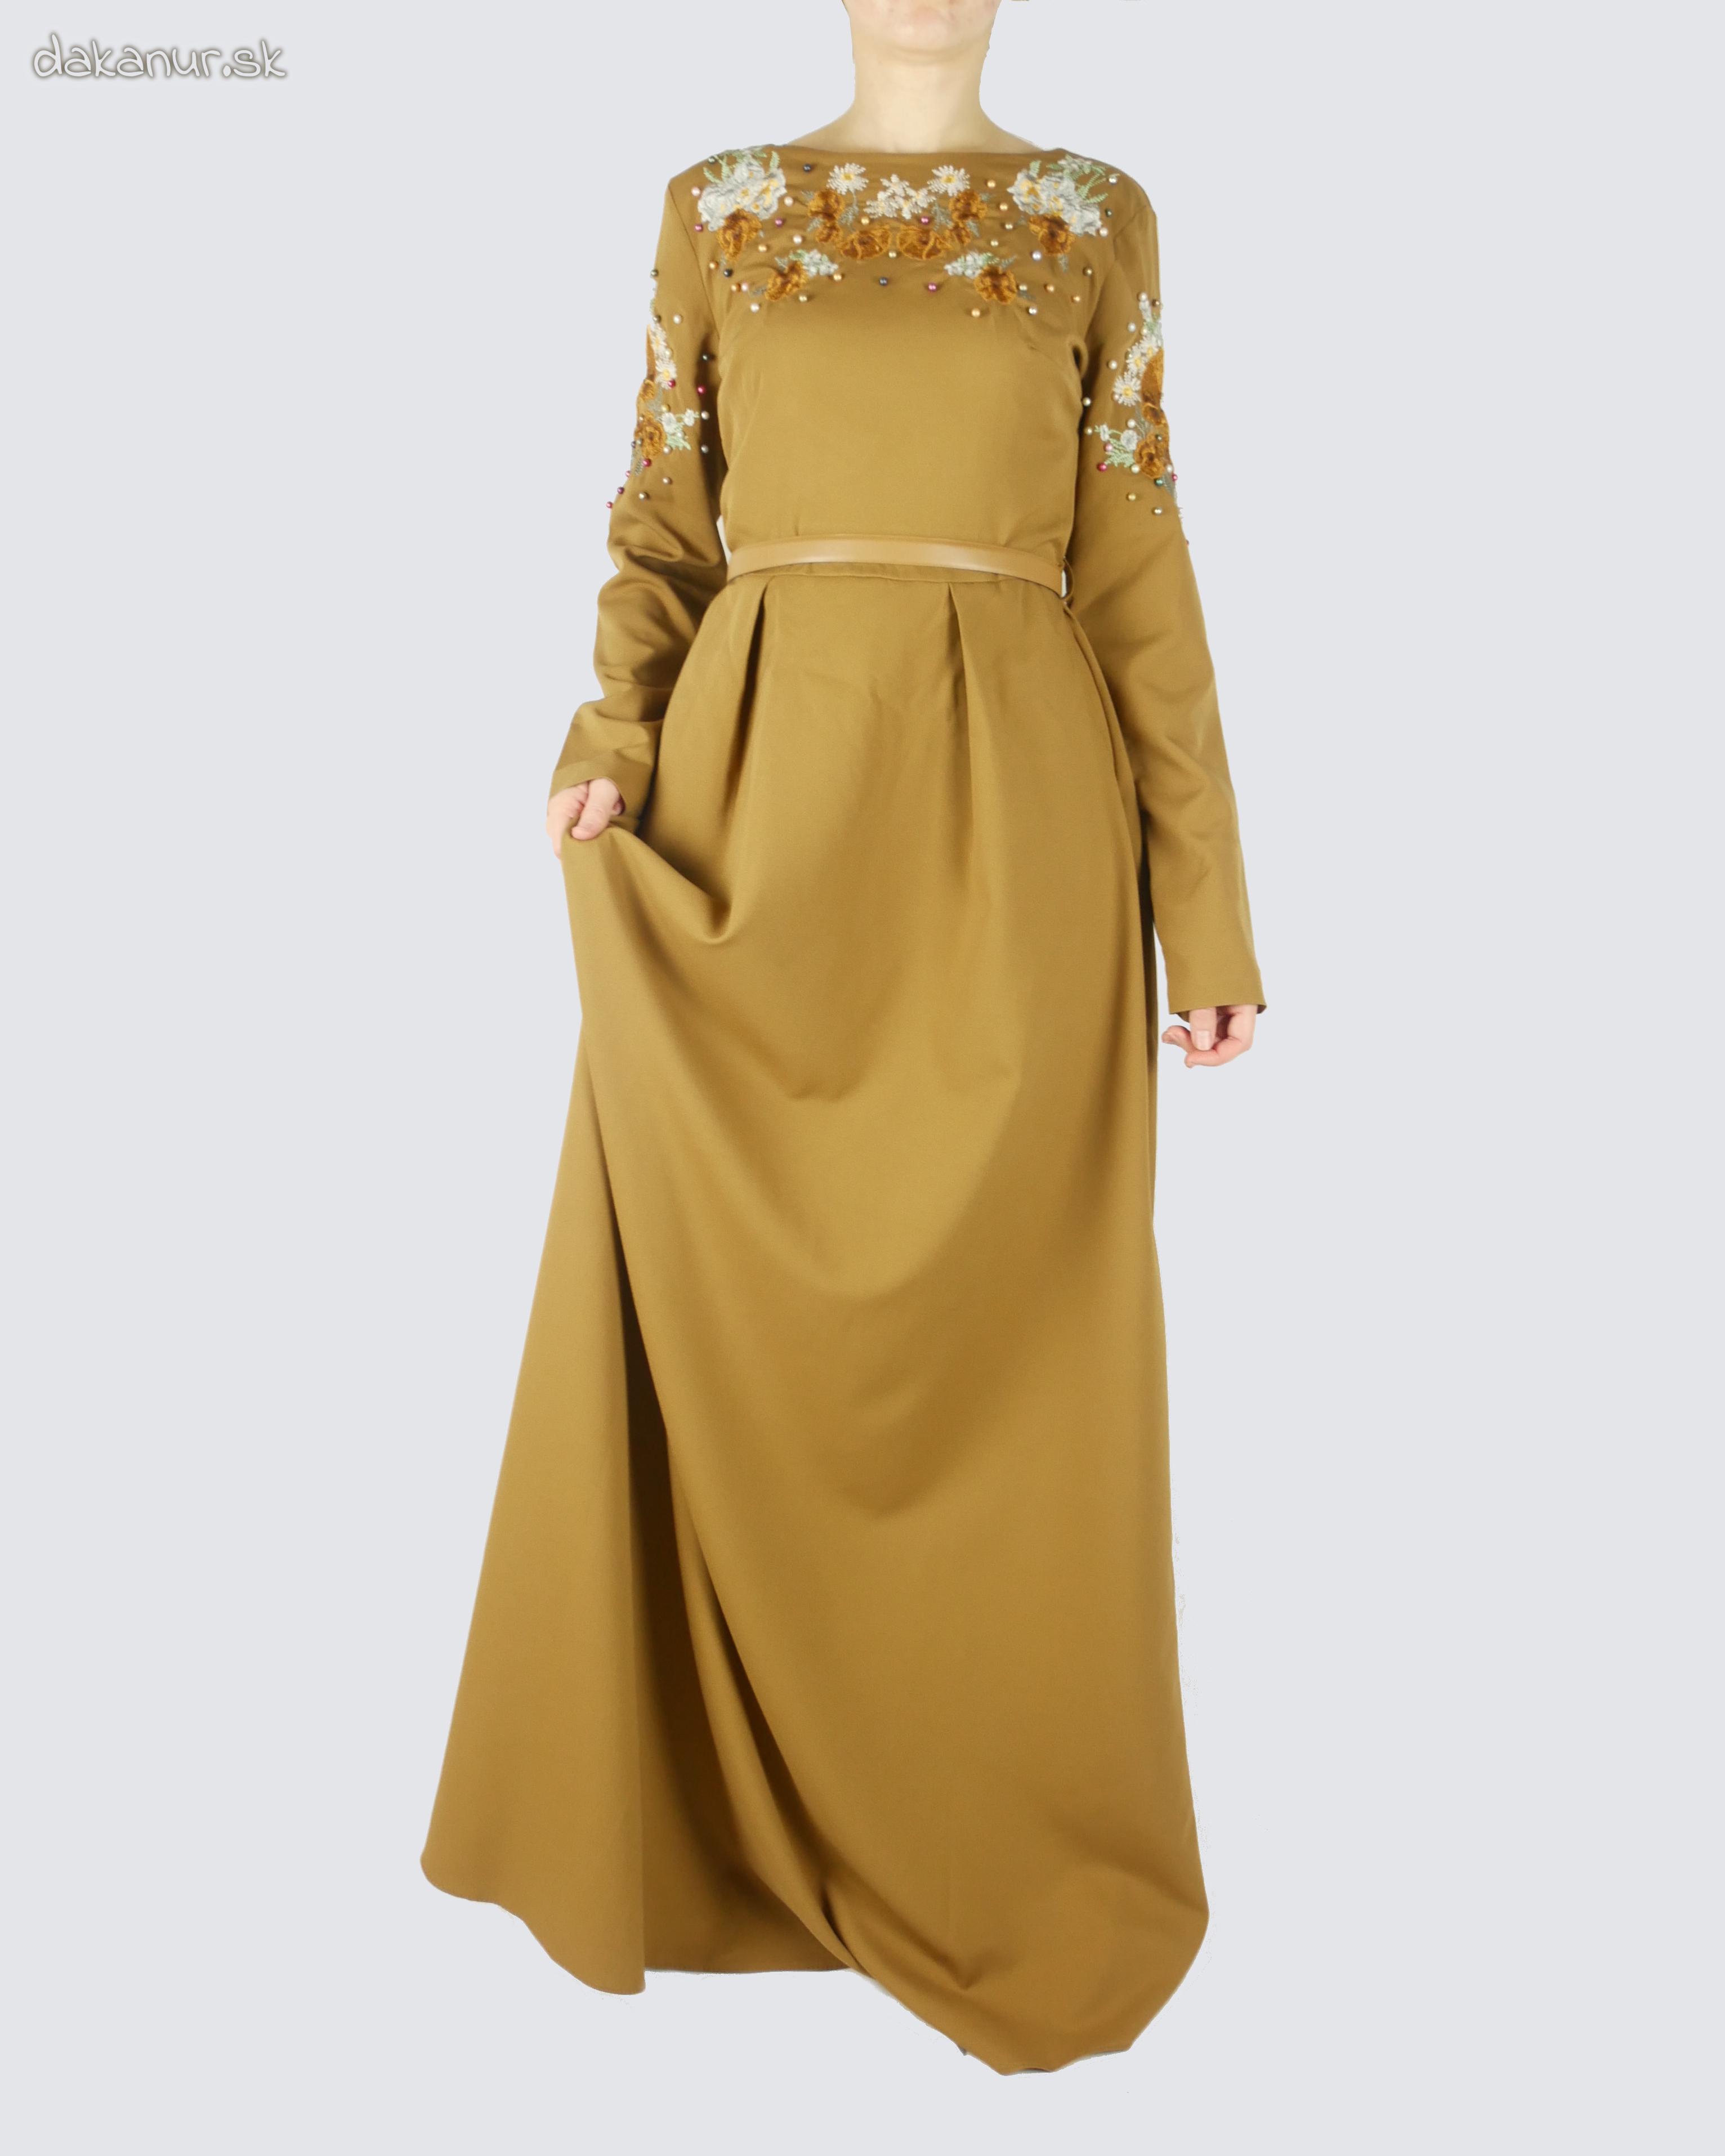 Hnedé vyšívané šaty zdobené korálkami